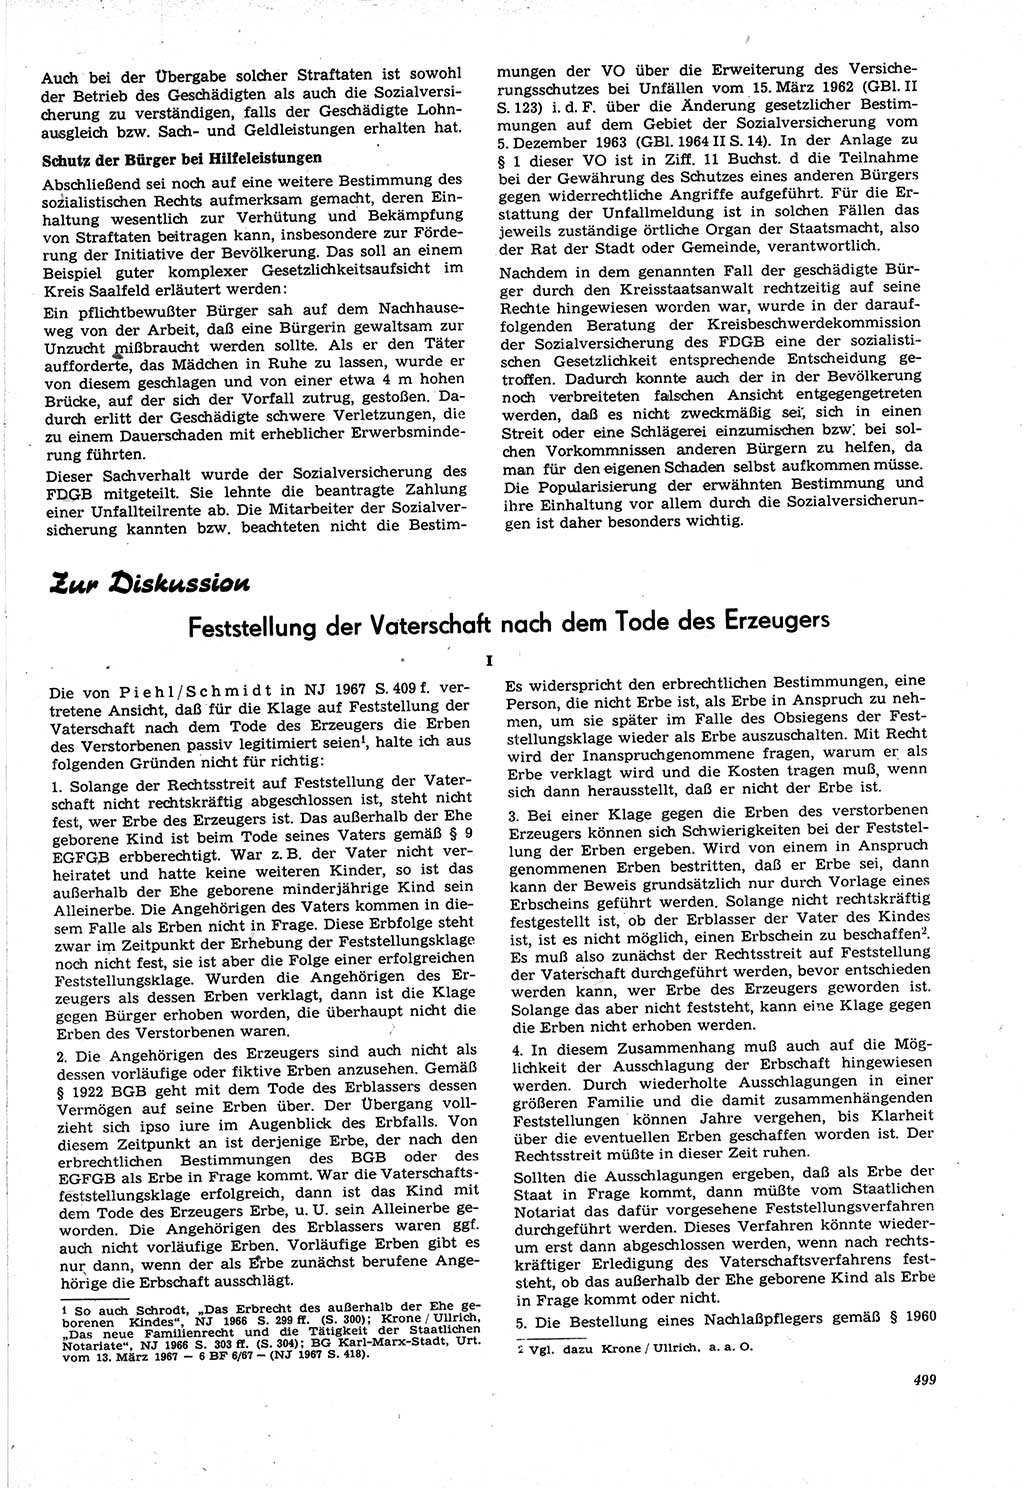 Neue Justiz (NJ), Zeitschrift für Recht und Rechtswissenschaft [Deutsche Demokratische Republik (DDR)], 21. Jahrgang 1967, Seite 499 (NJ DDR 1967, S. 499)